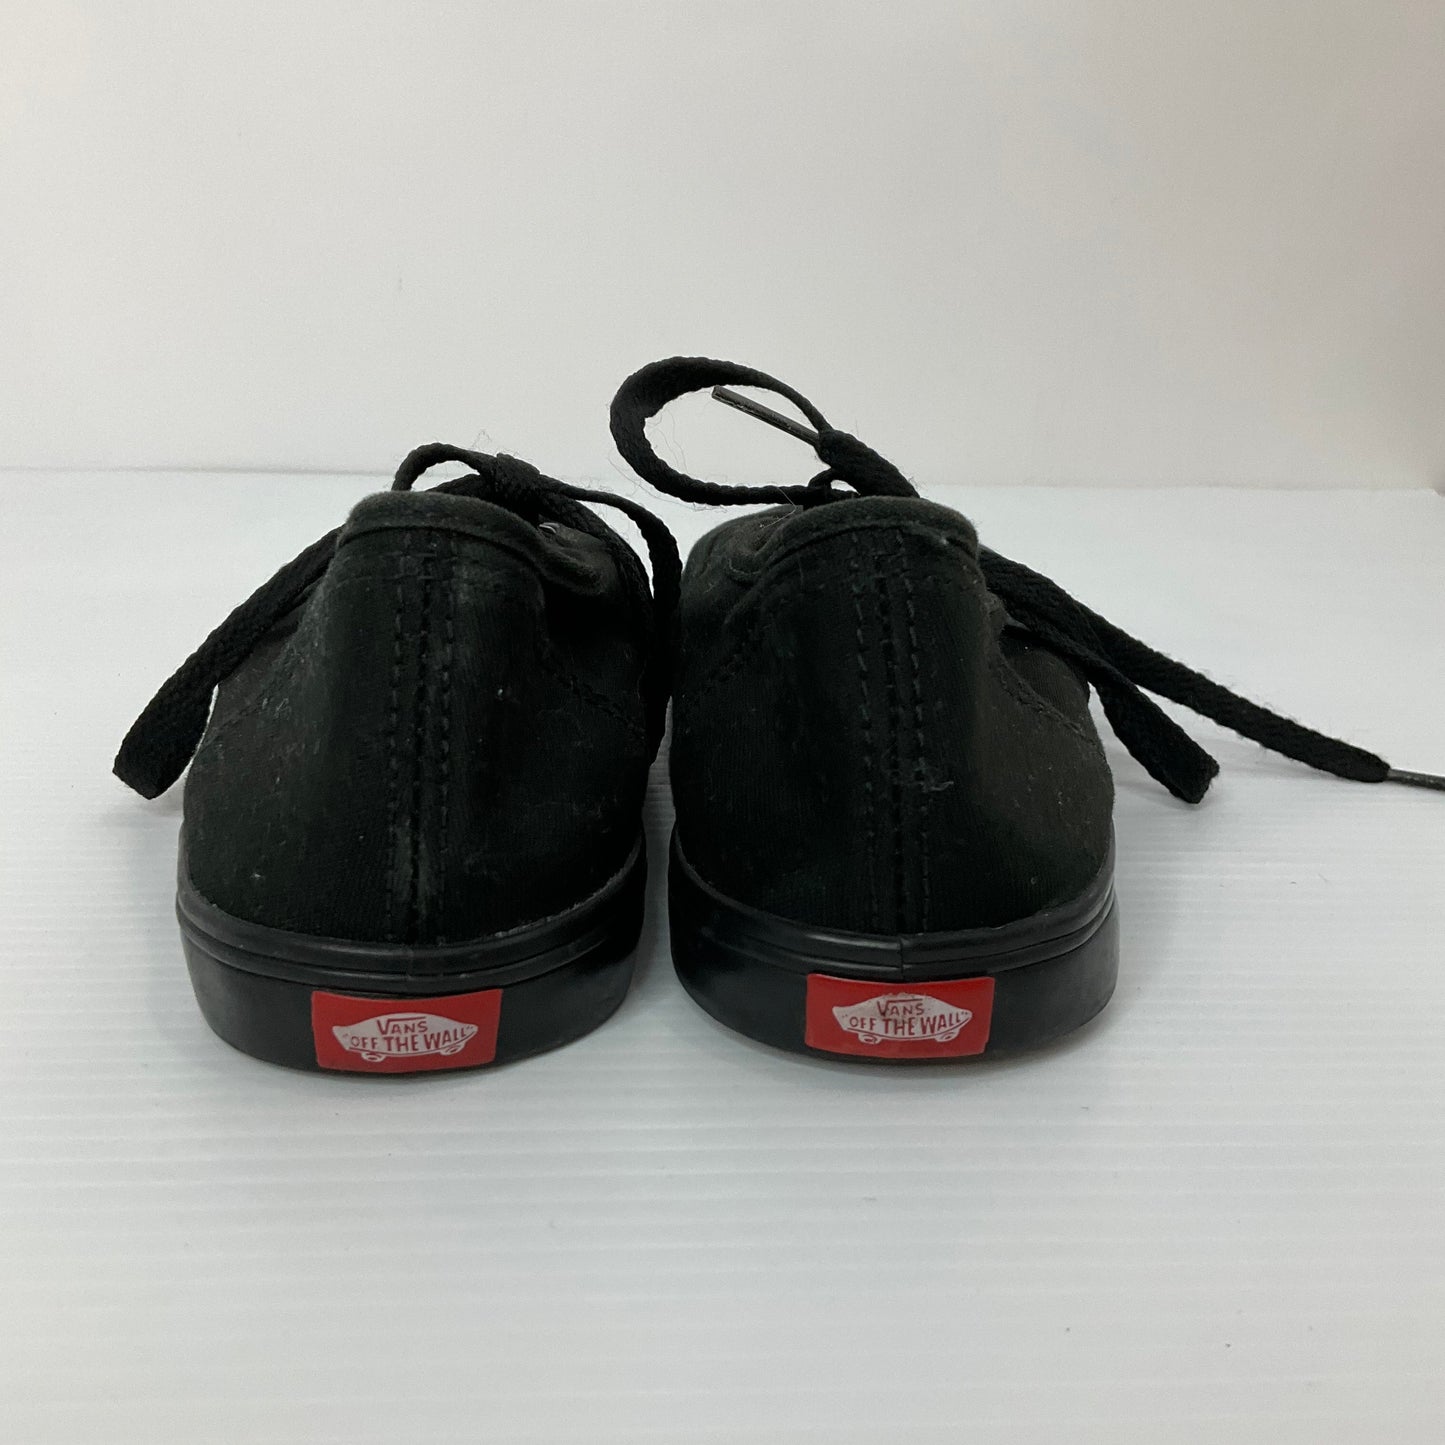 Black Shoes Sneakers Vans, Size 6.5